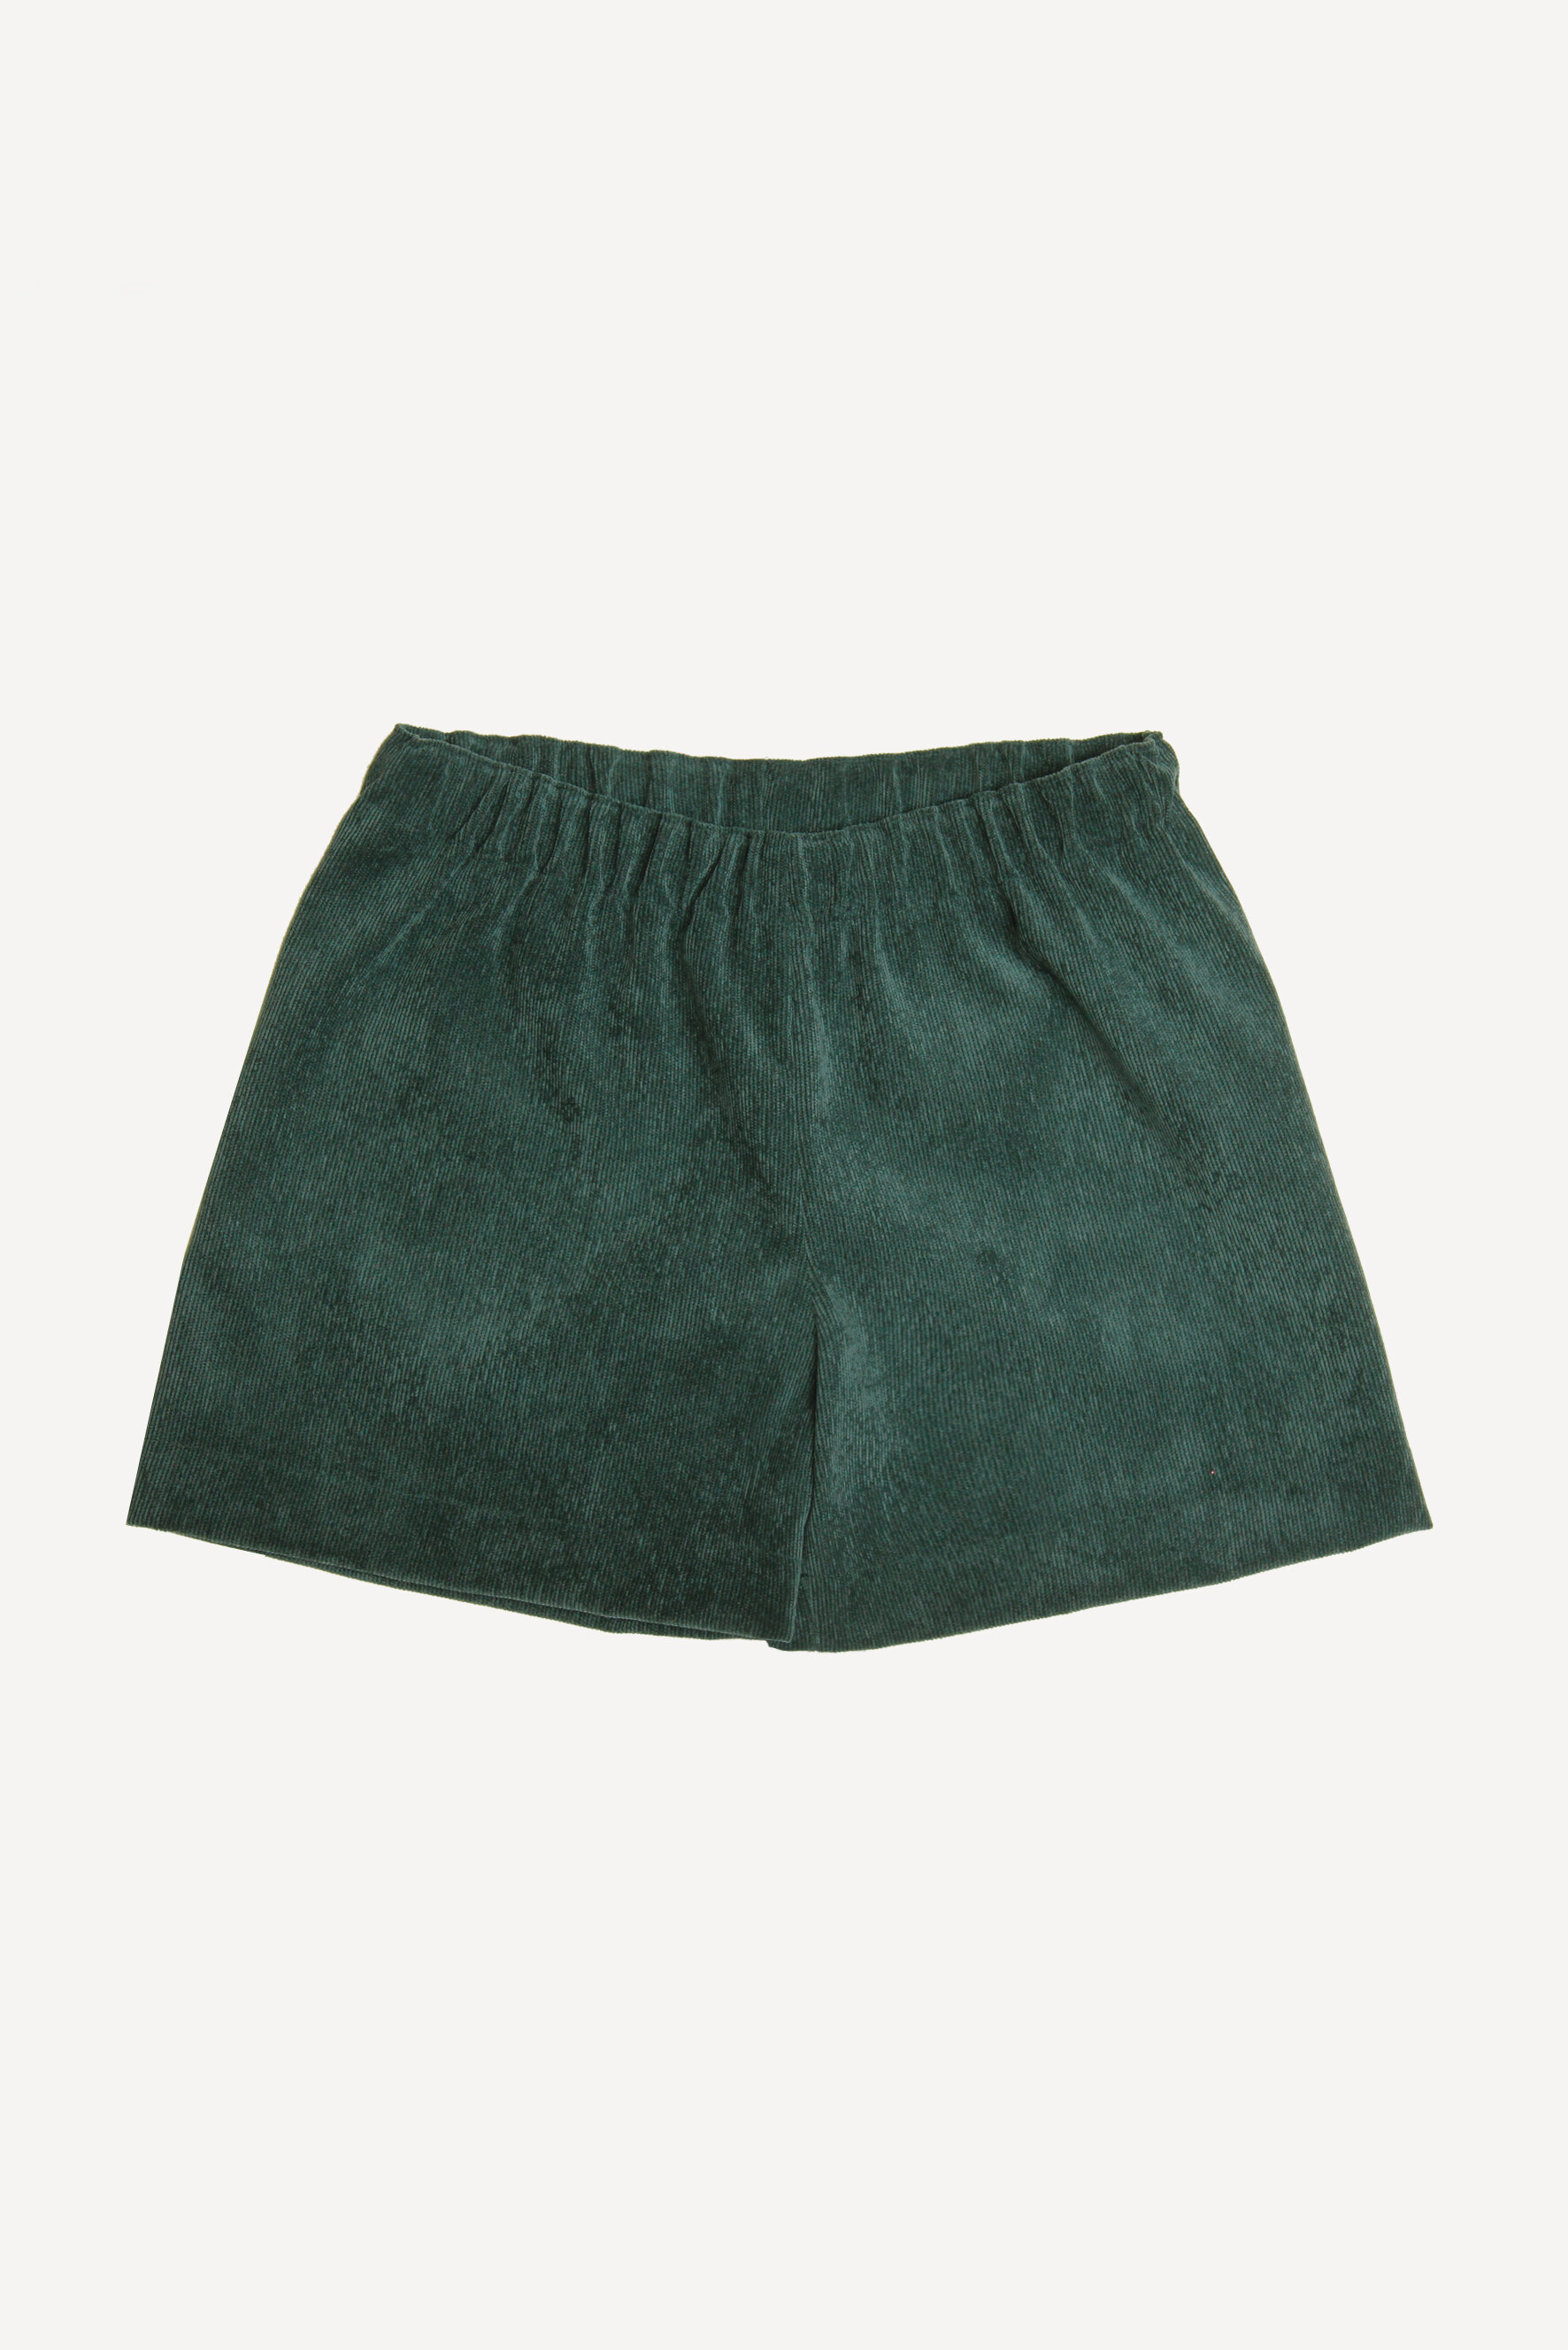 Pantaloncini bambina in velluto verde